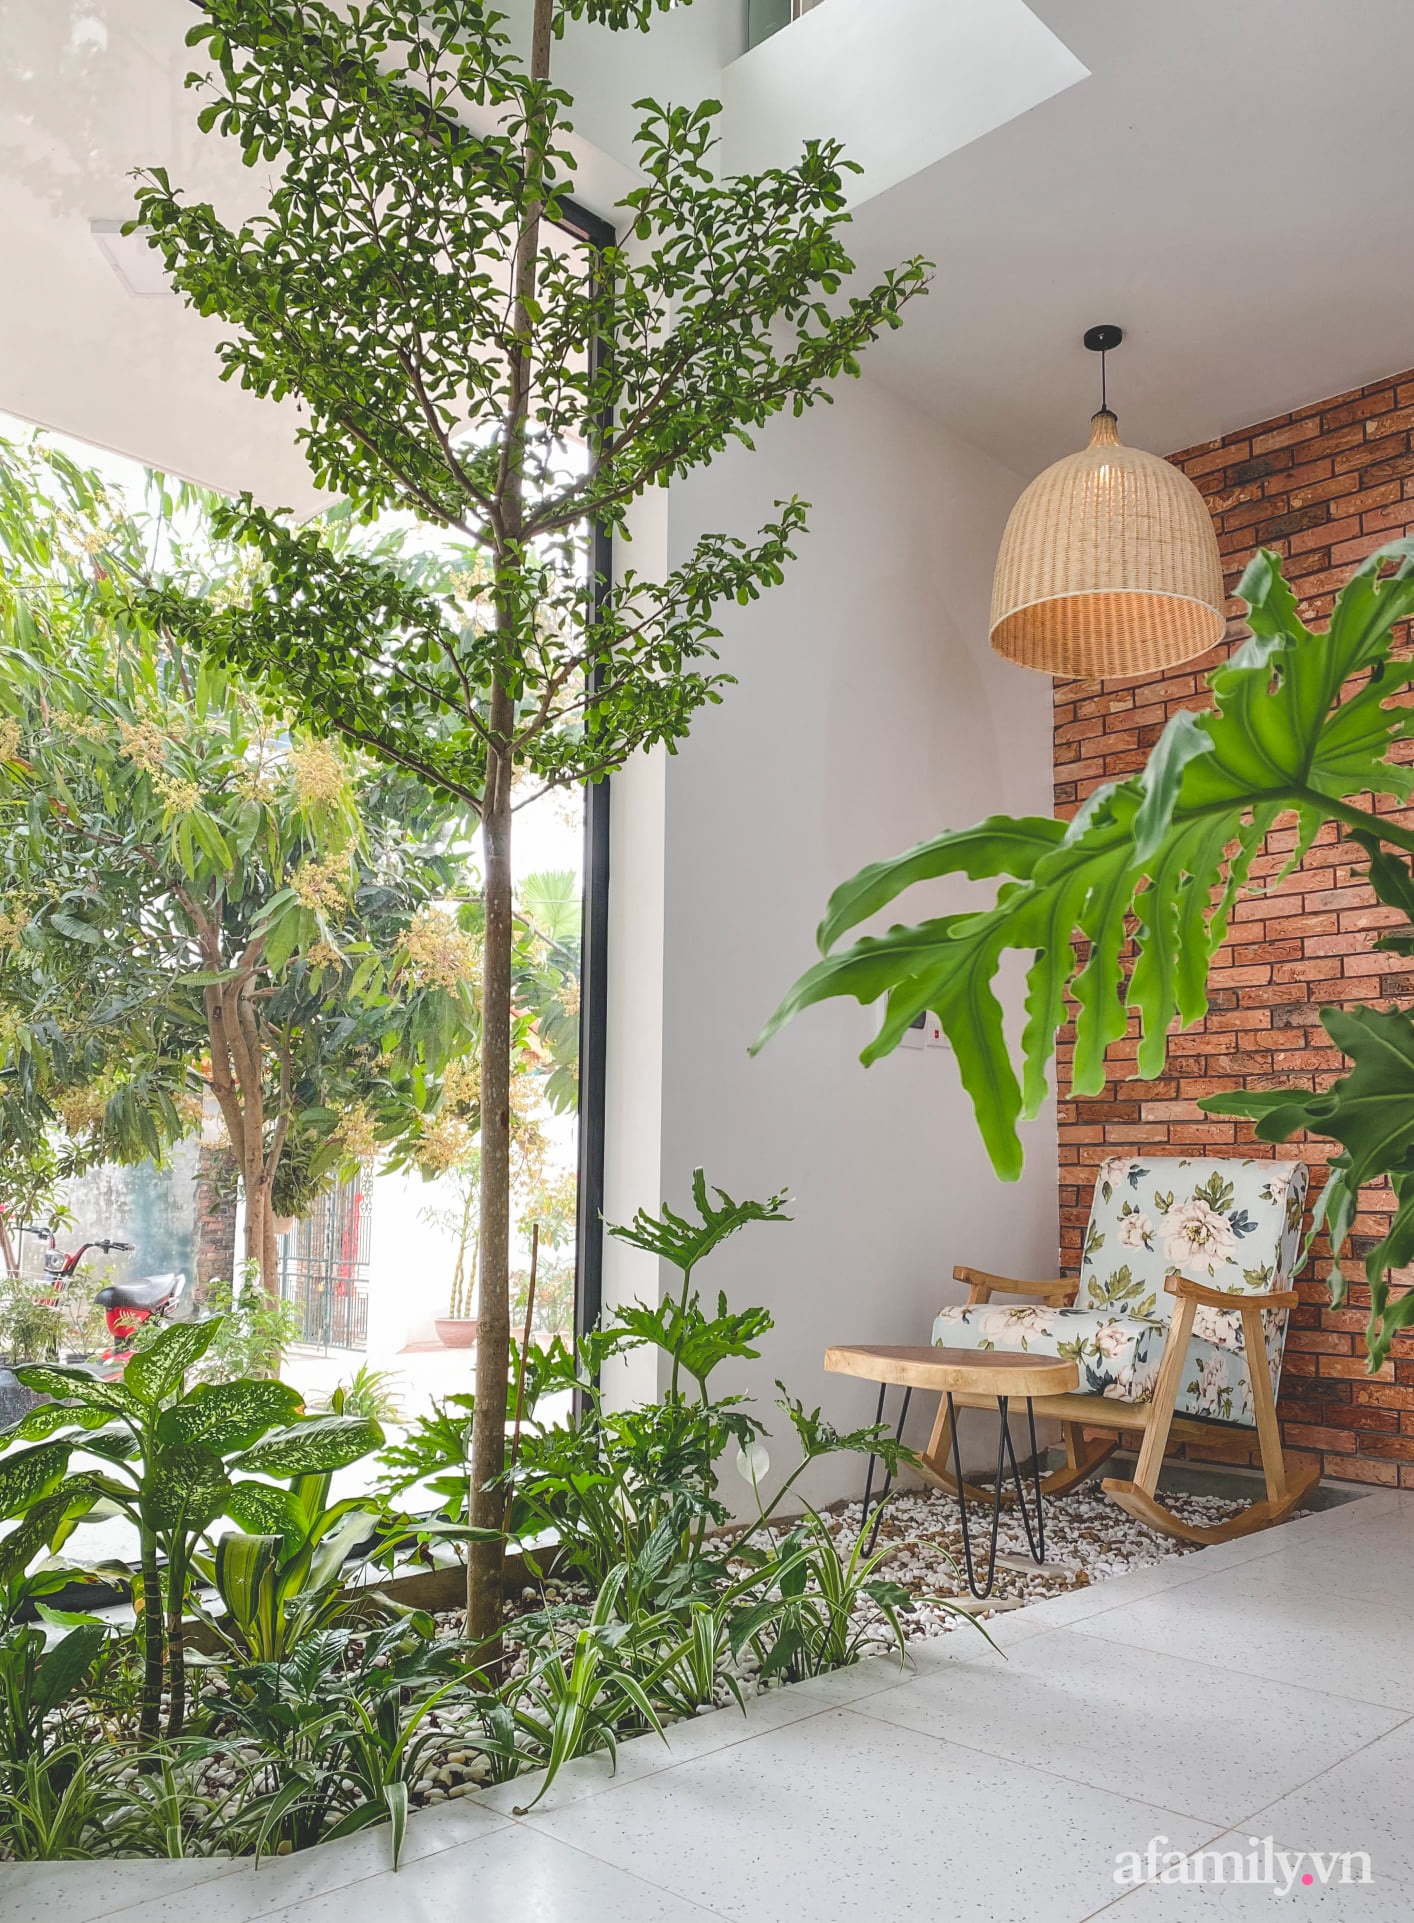 Căn nhà 90 m² đẹp bình yên, xanh mát bóng cây giữa làng cổ Đường Lâm, Hà Nội - Ảnh 14.